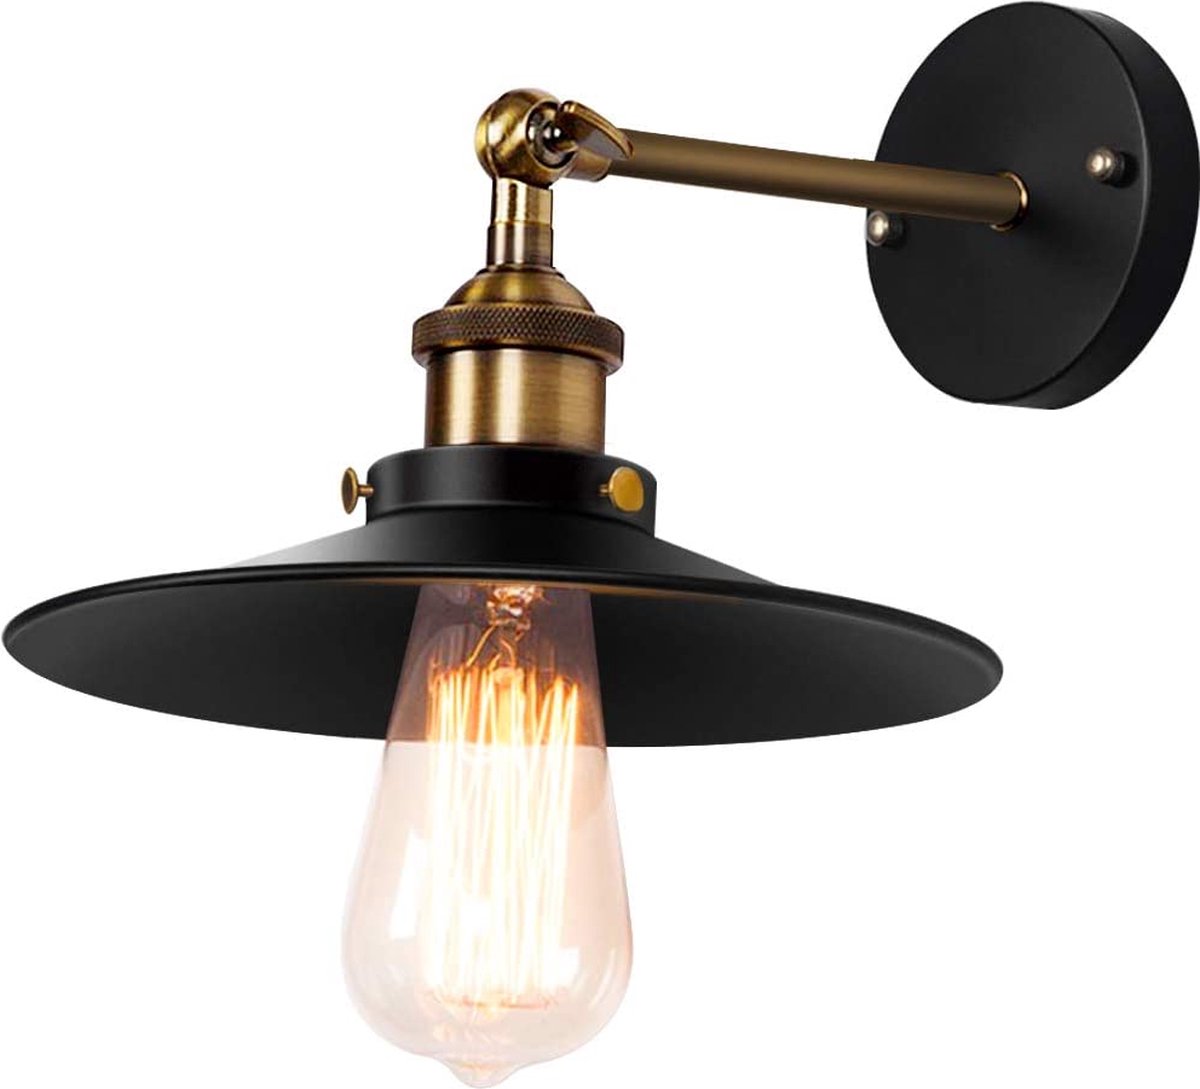 Retro Hoexs - Wandlamp - Vintage Lamp voor Binnen - Industriële Stijl met Hout en Metaal - E27 Fitting - Katrol Design